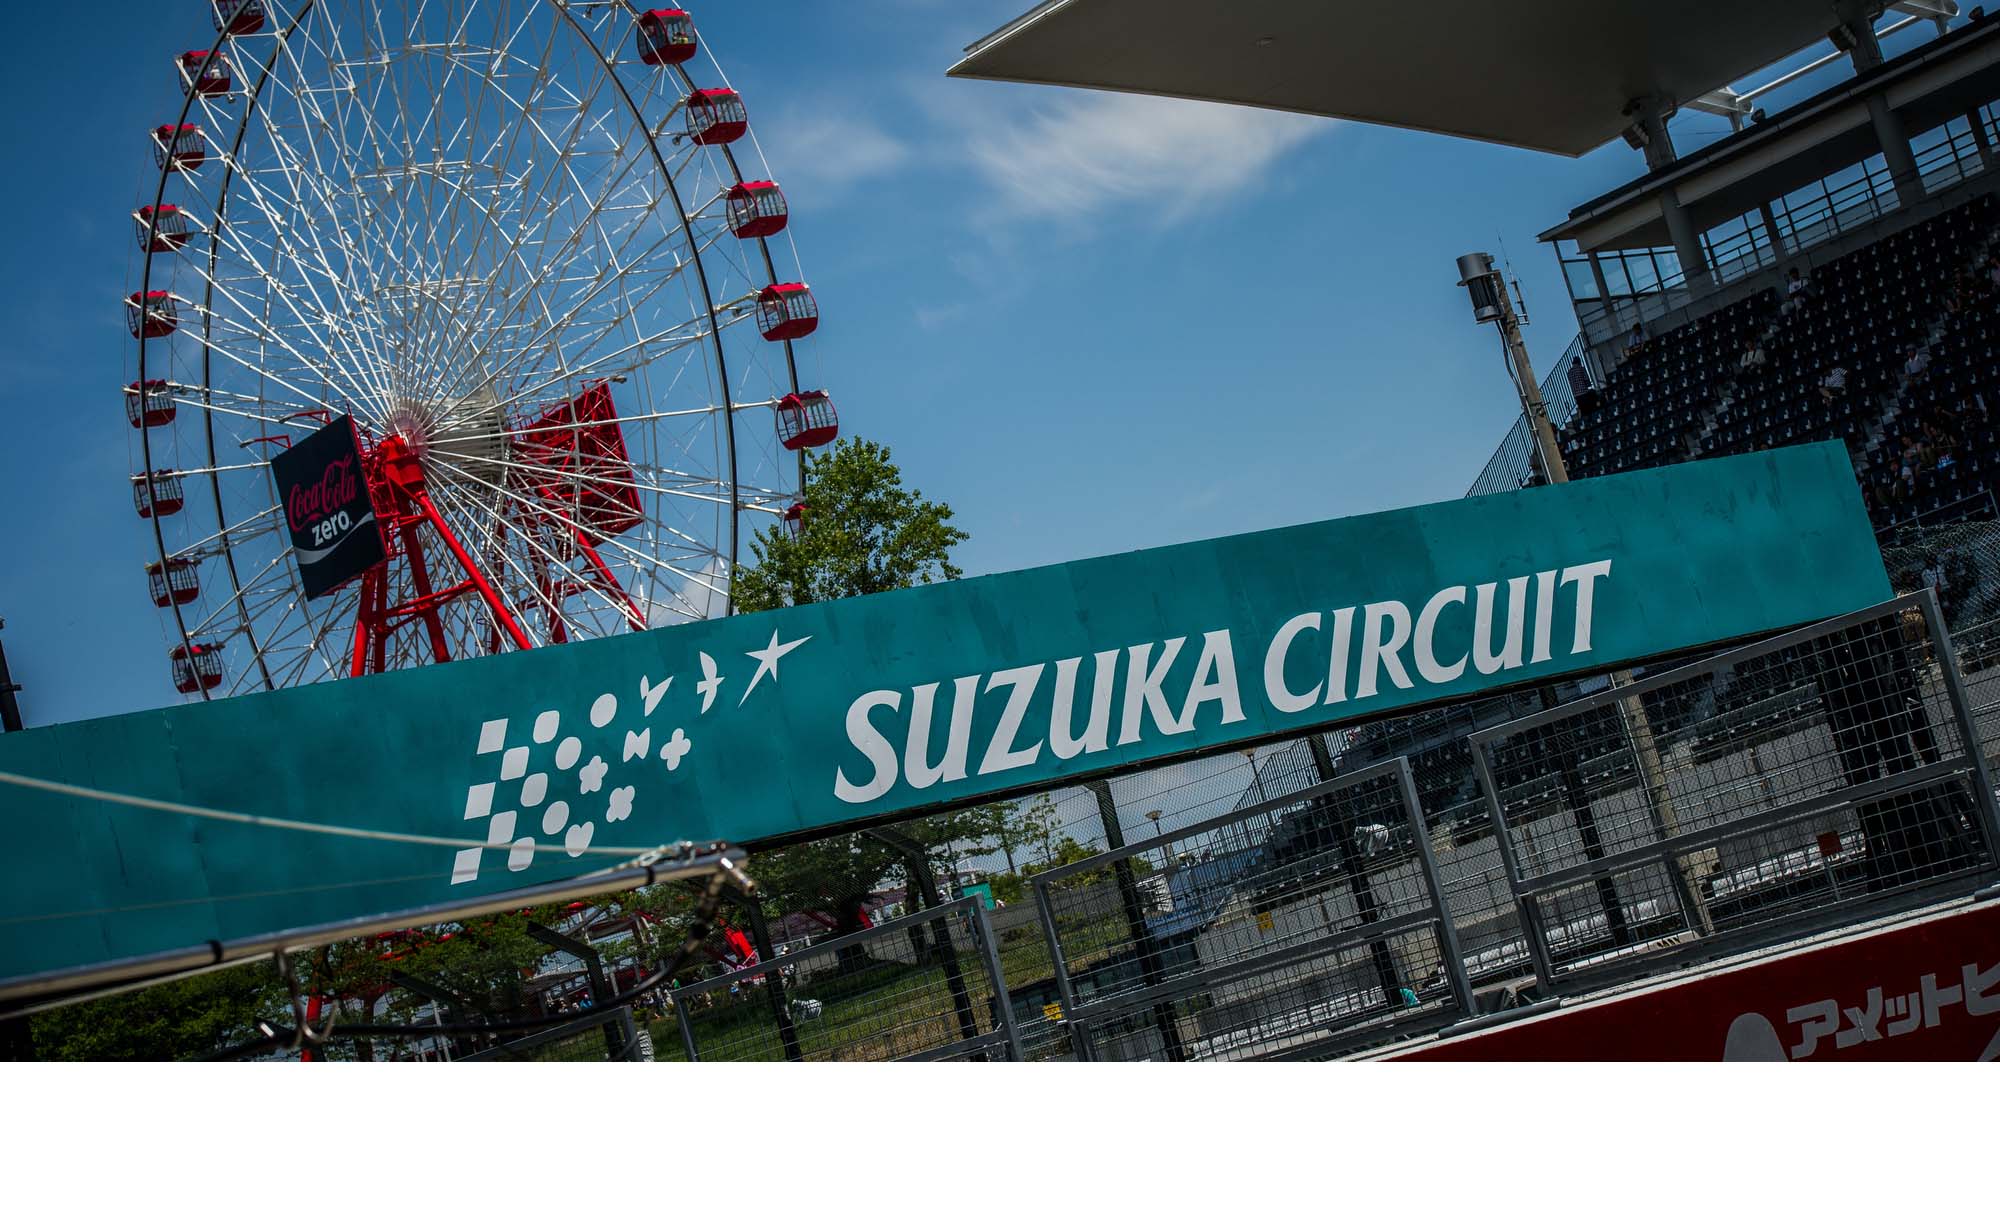 Este fin de semana la Fórmula 1 se trasladó al circuito japonés Suzuka para dar continuidad a la temporada 2016 que pronto finalizará